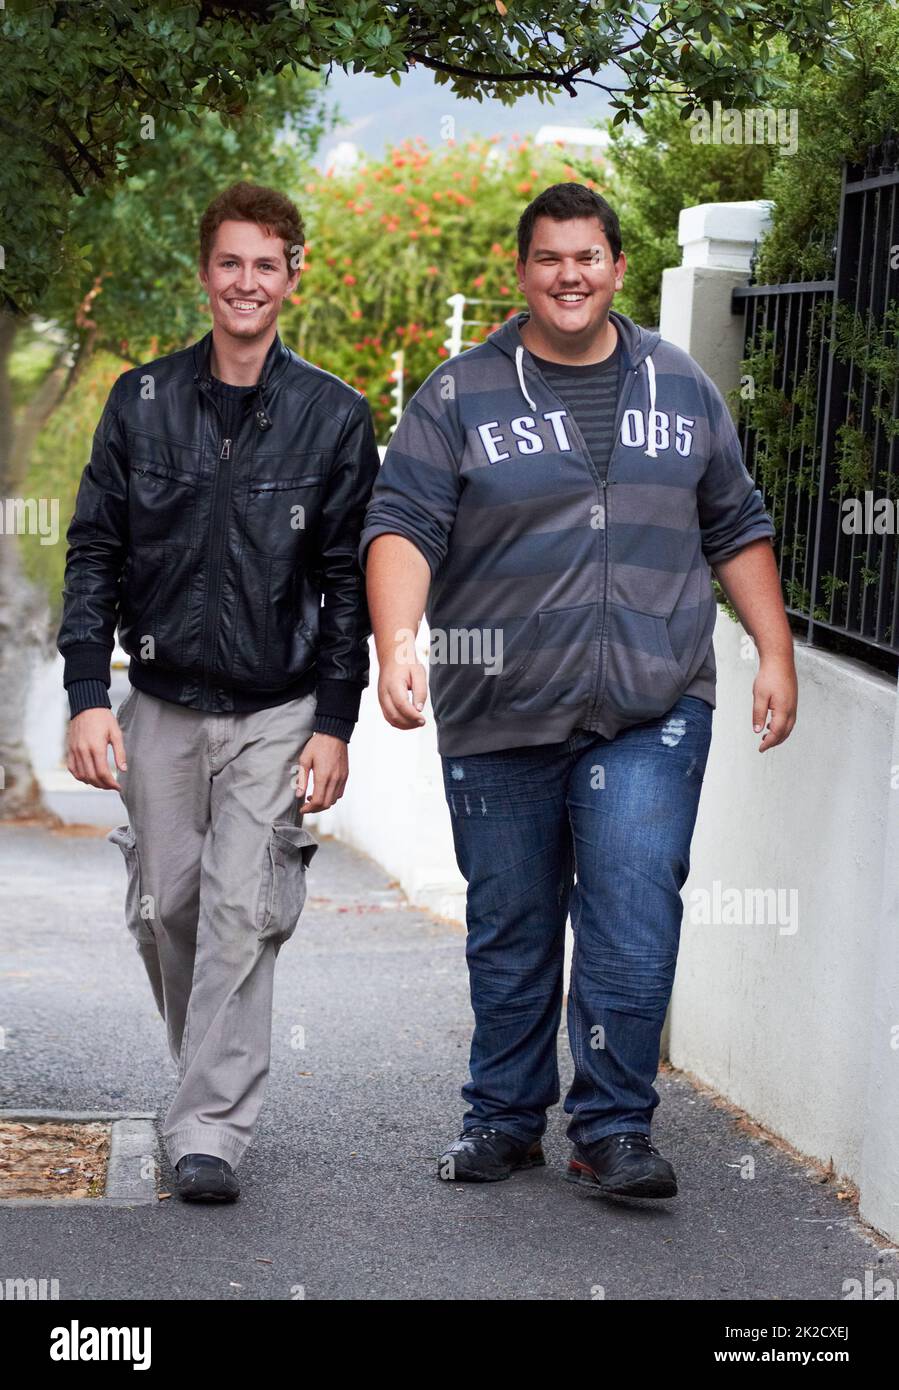 Fare una passeggiata informale. Un giovane uomo in sovrappeso vestito casualmente che cammina lungo il marciapiede con il suo amico. Foto Stock